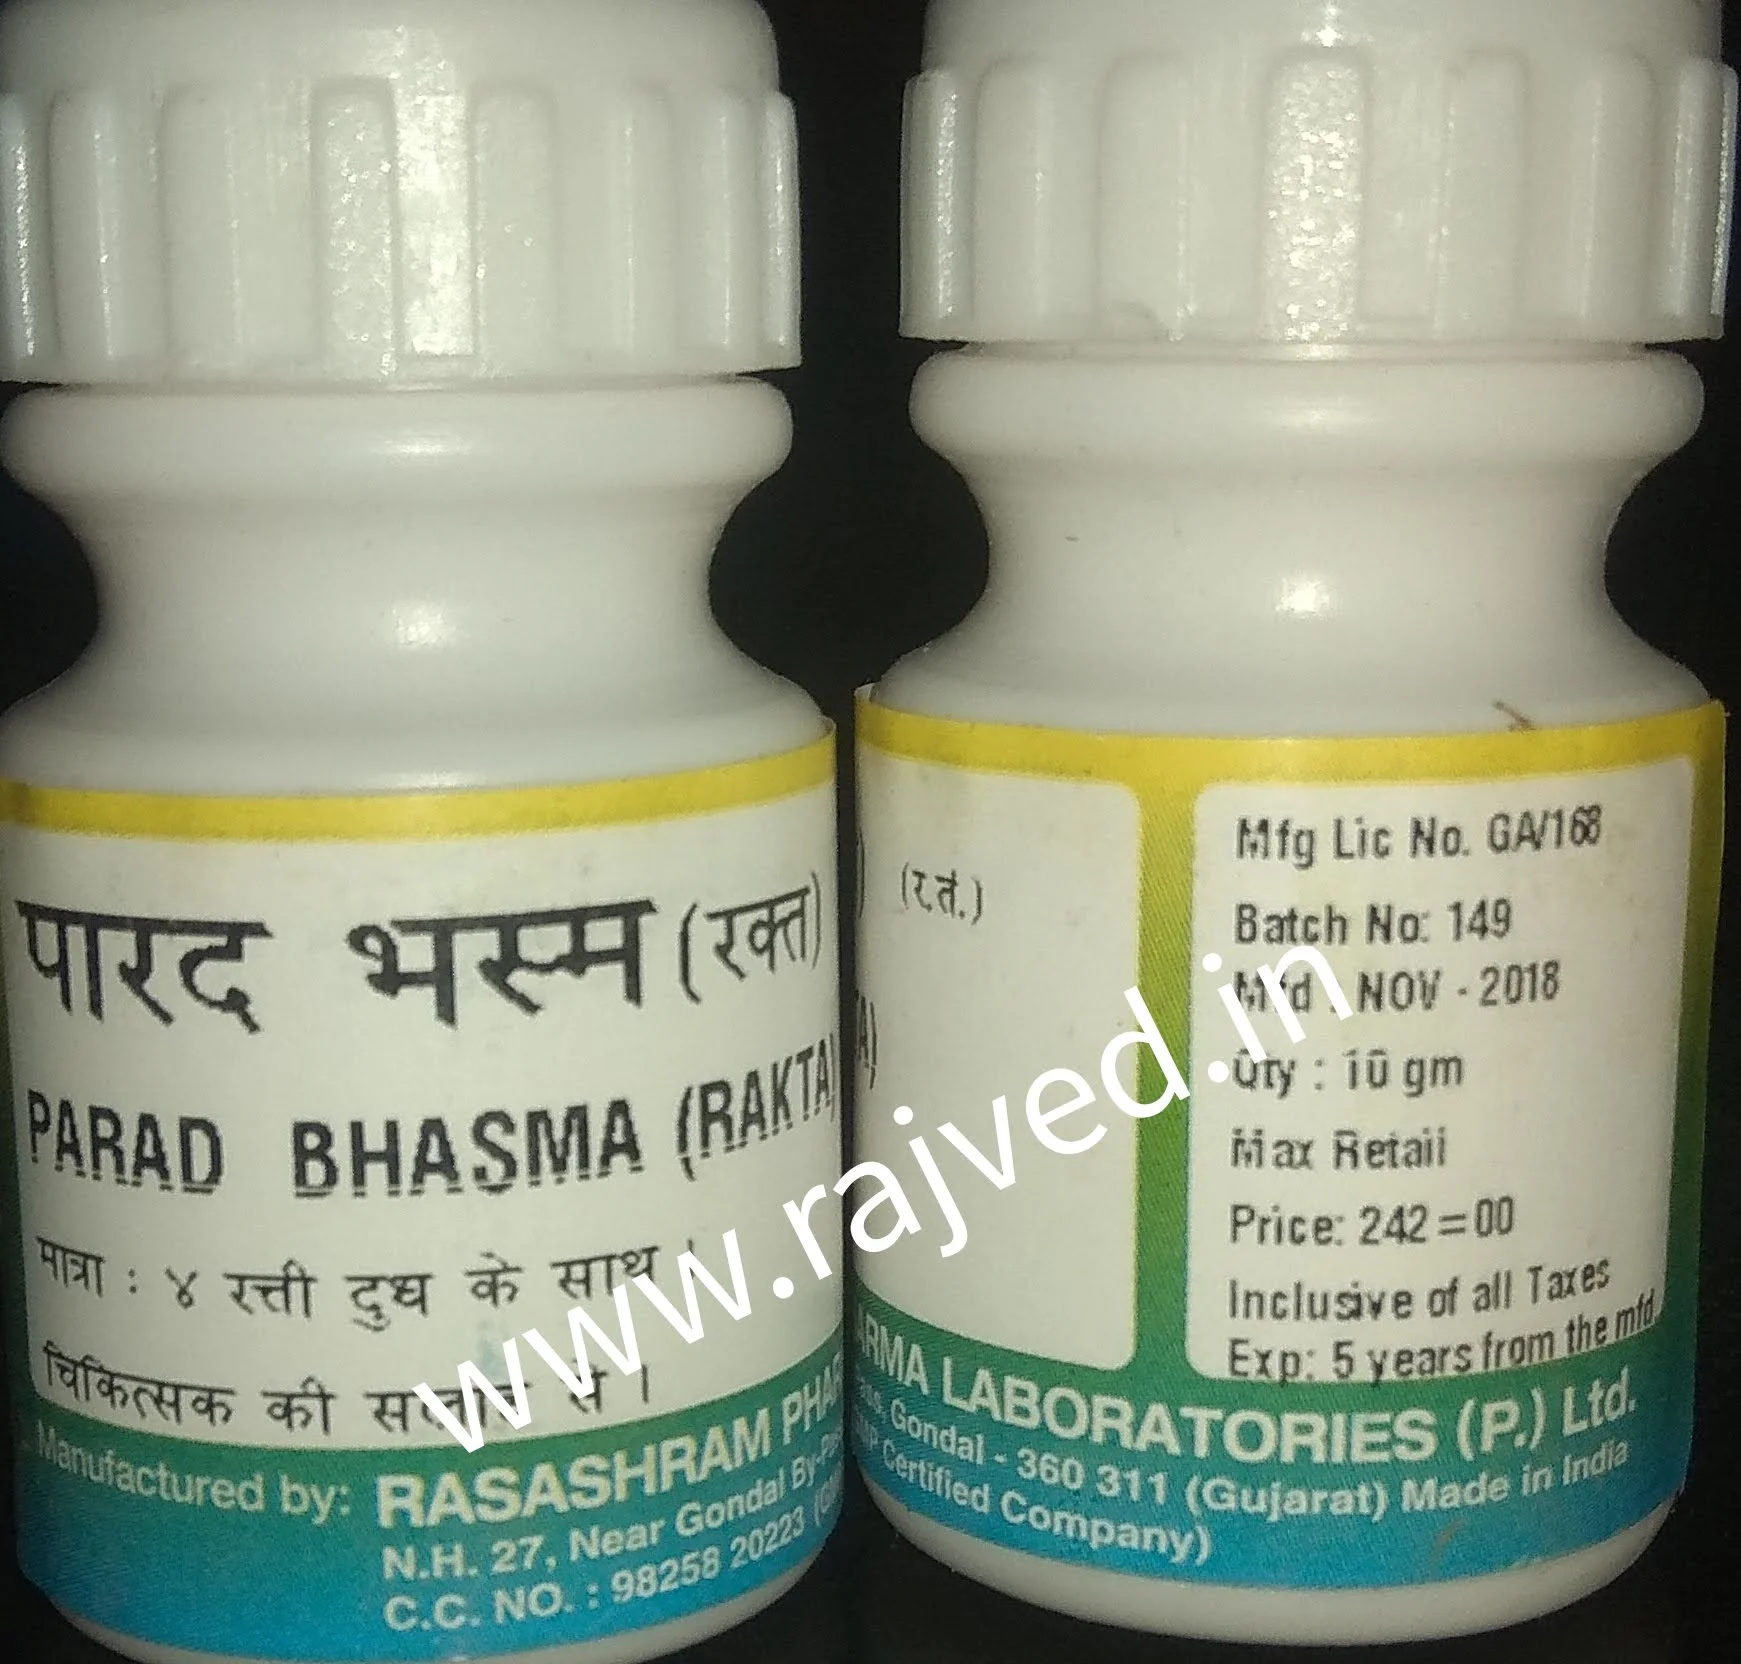 parad bhasma rakta 10 gm upto 15% off Rasashram Pharma